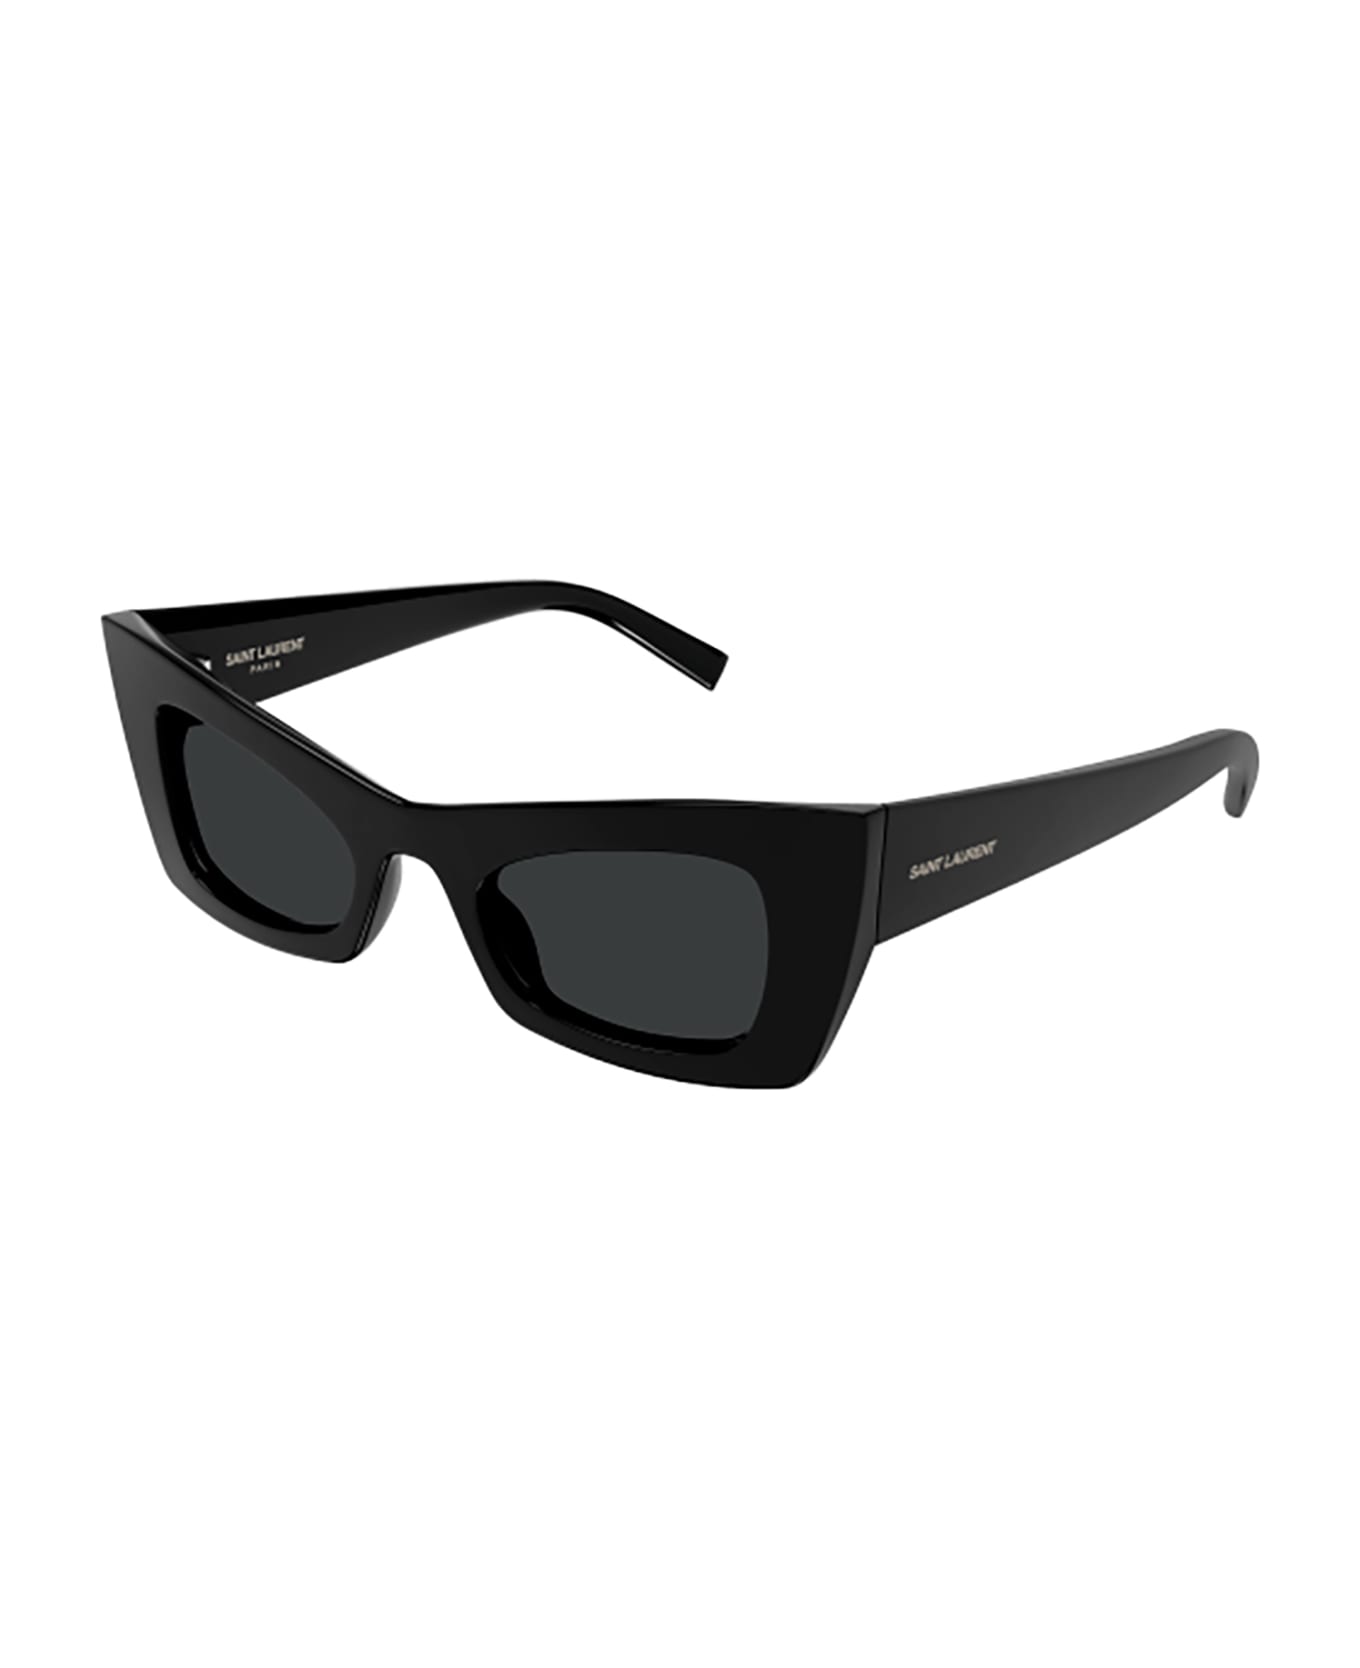 Saint Laurent Eyewear SL 702 Sunglasses - Black Black Black サングラス